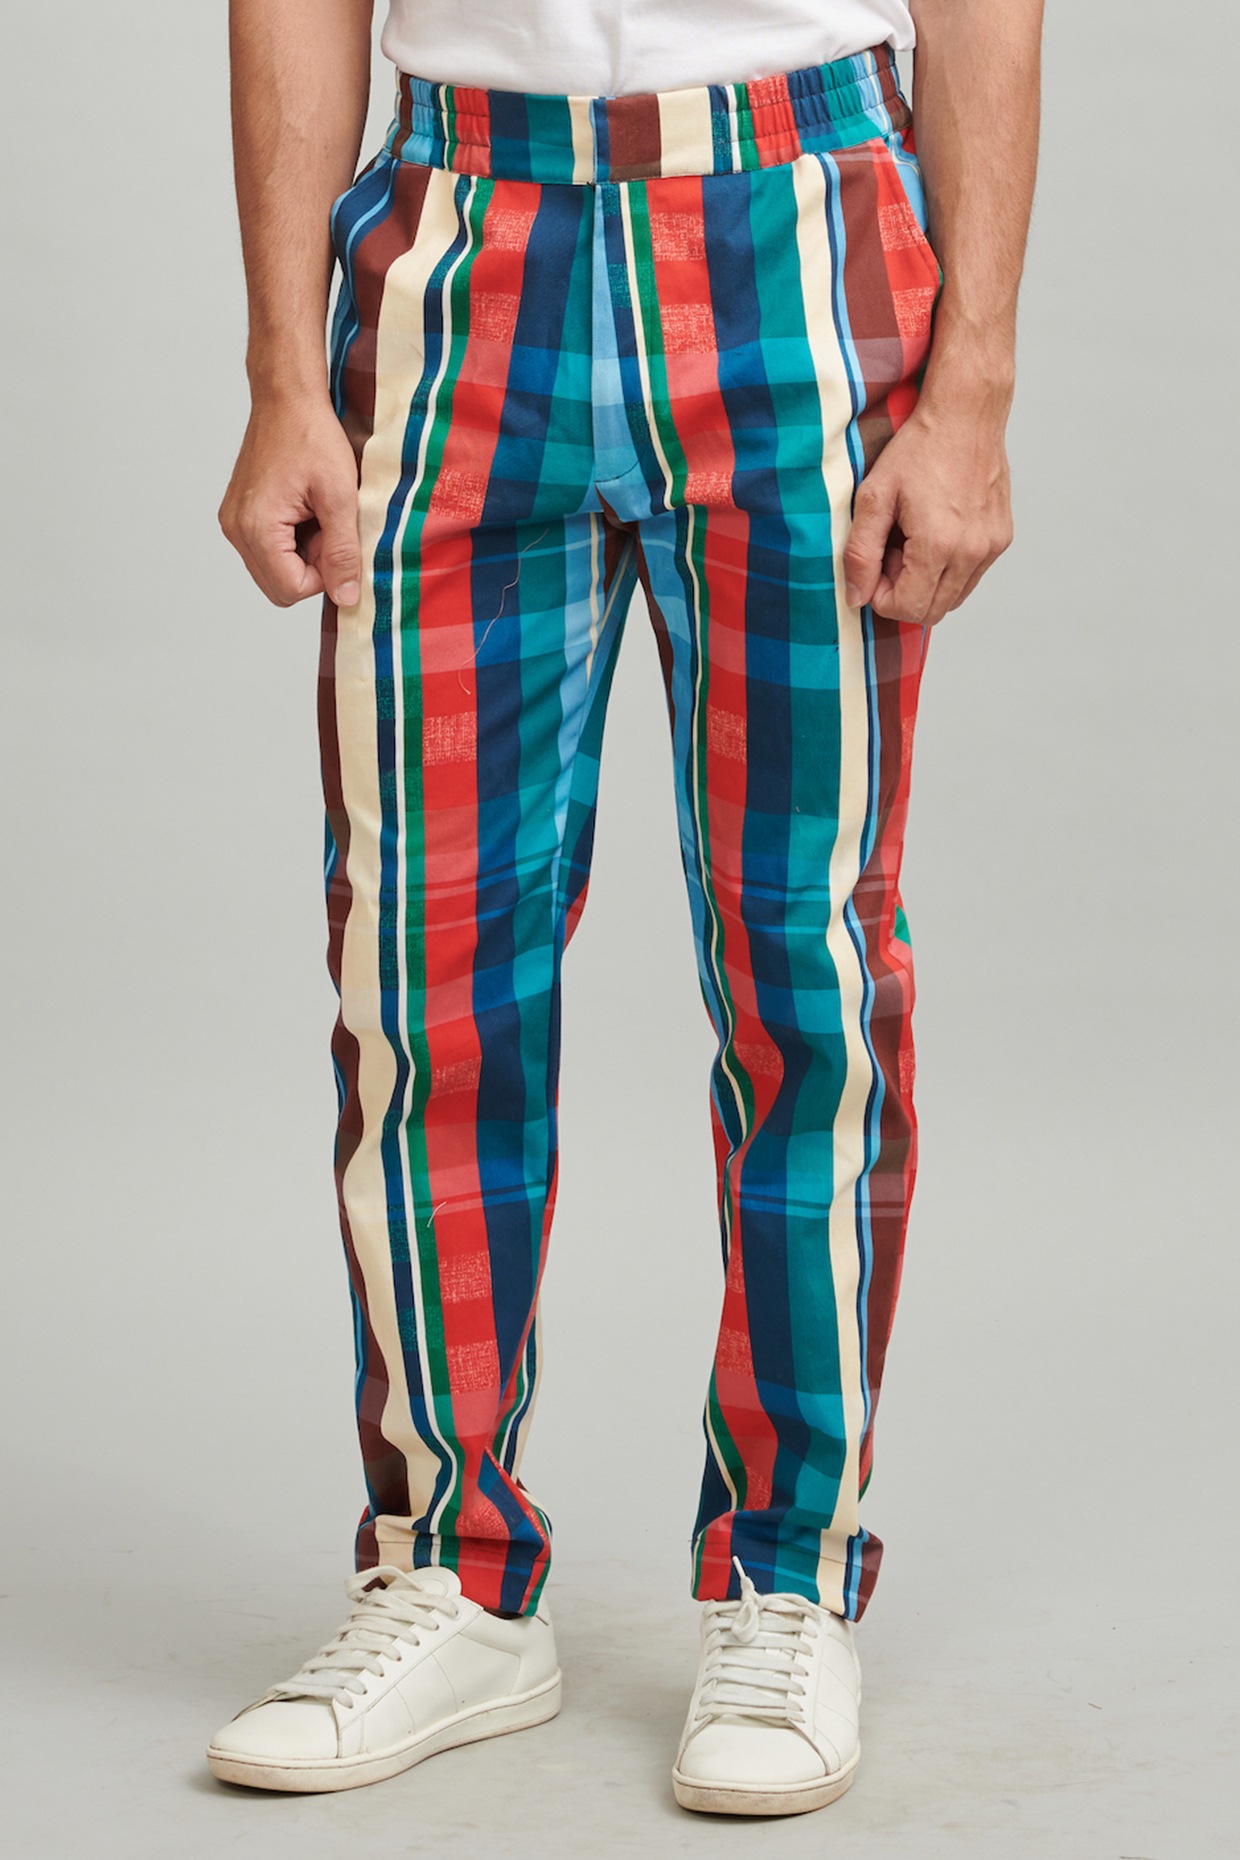 Buy Men Beige Striped Pants Online In India